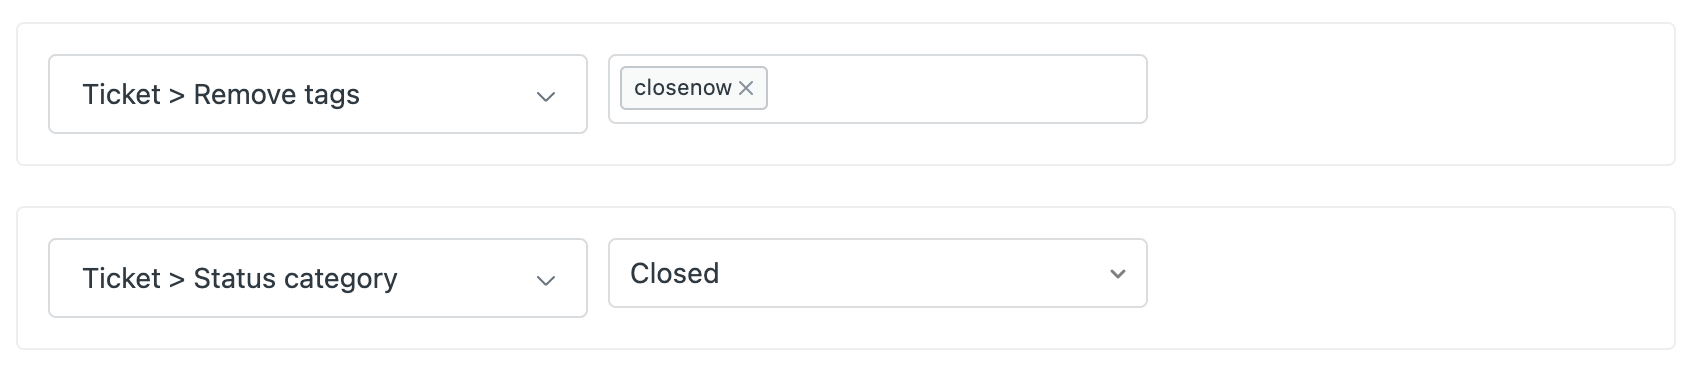 remover a tag closenow e alterar a categoria do status para closed